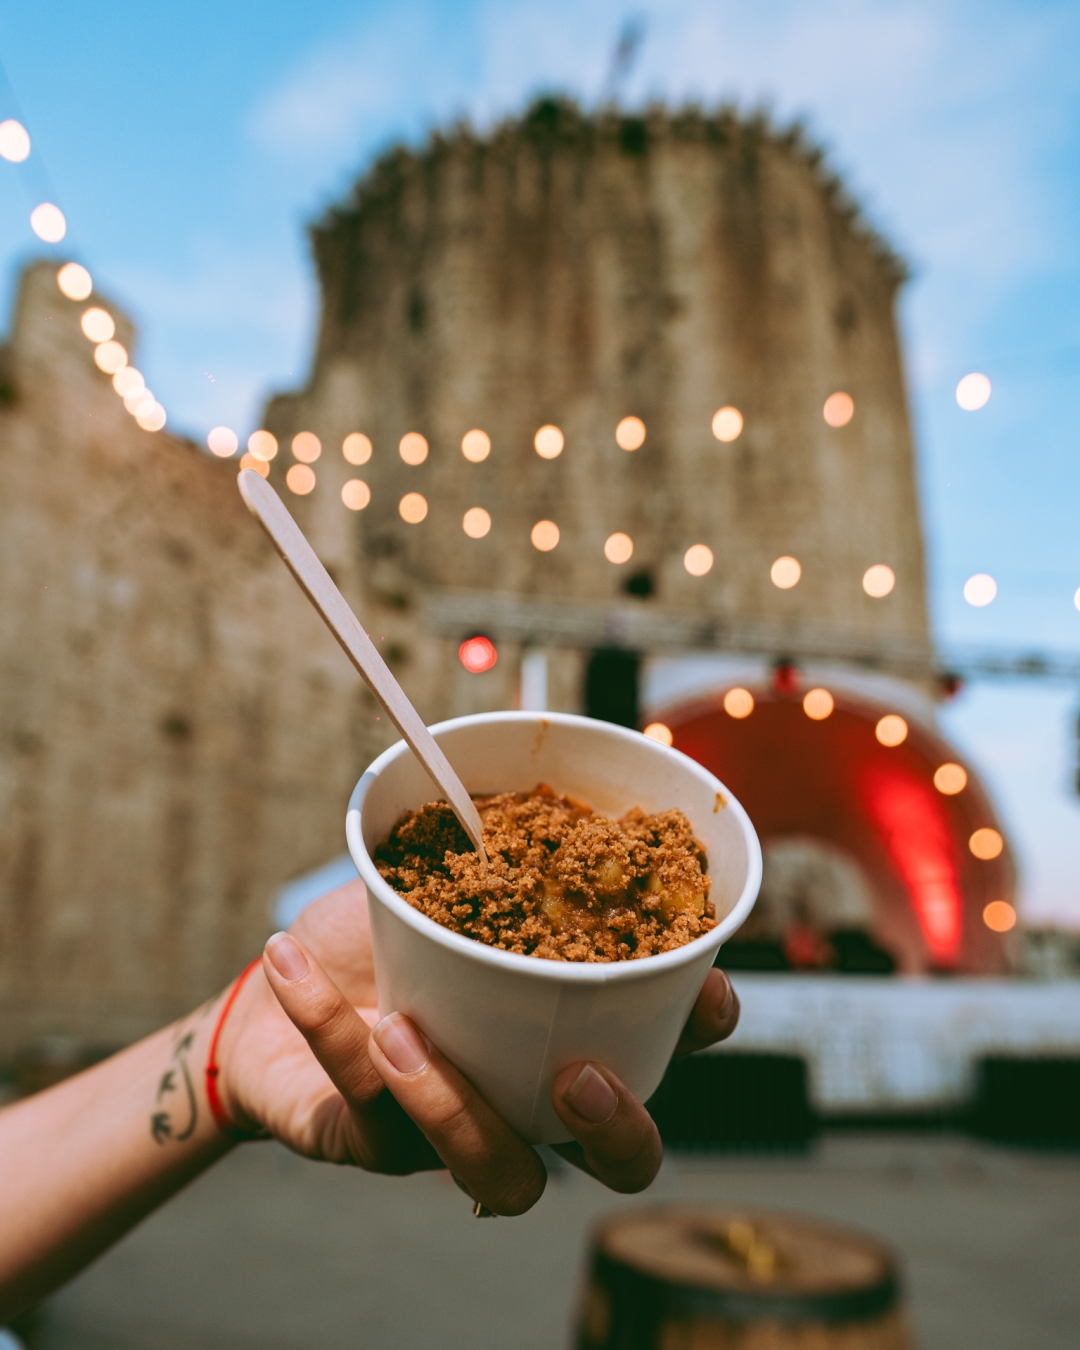 Babarol street food festival se vraća u Trogir, a večeras je otvorenje uz Mjesni Odbor